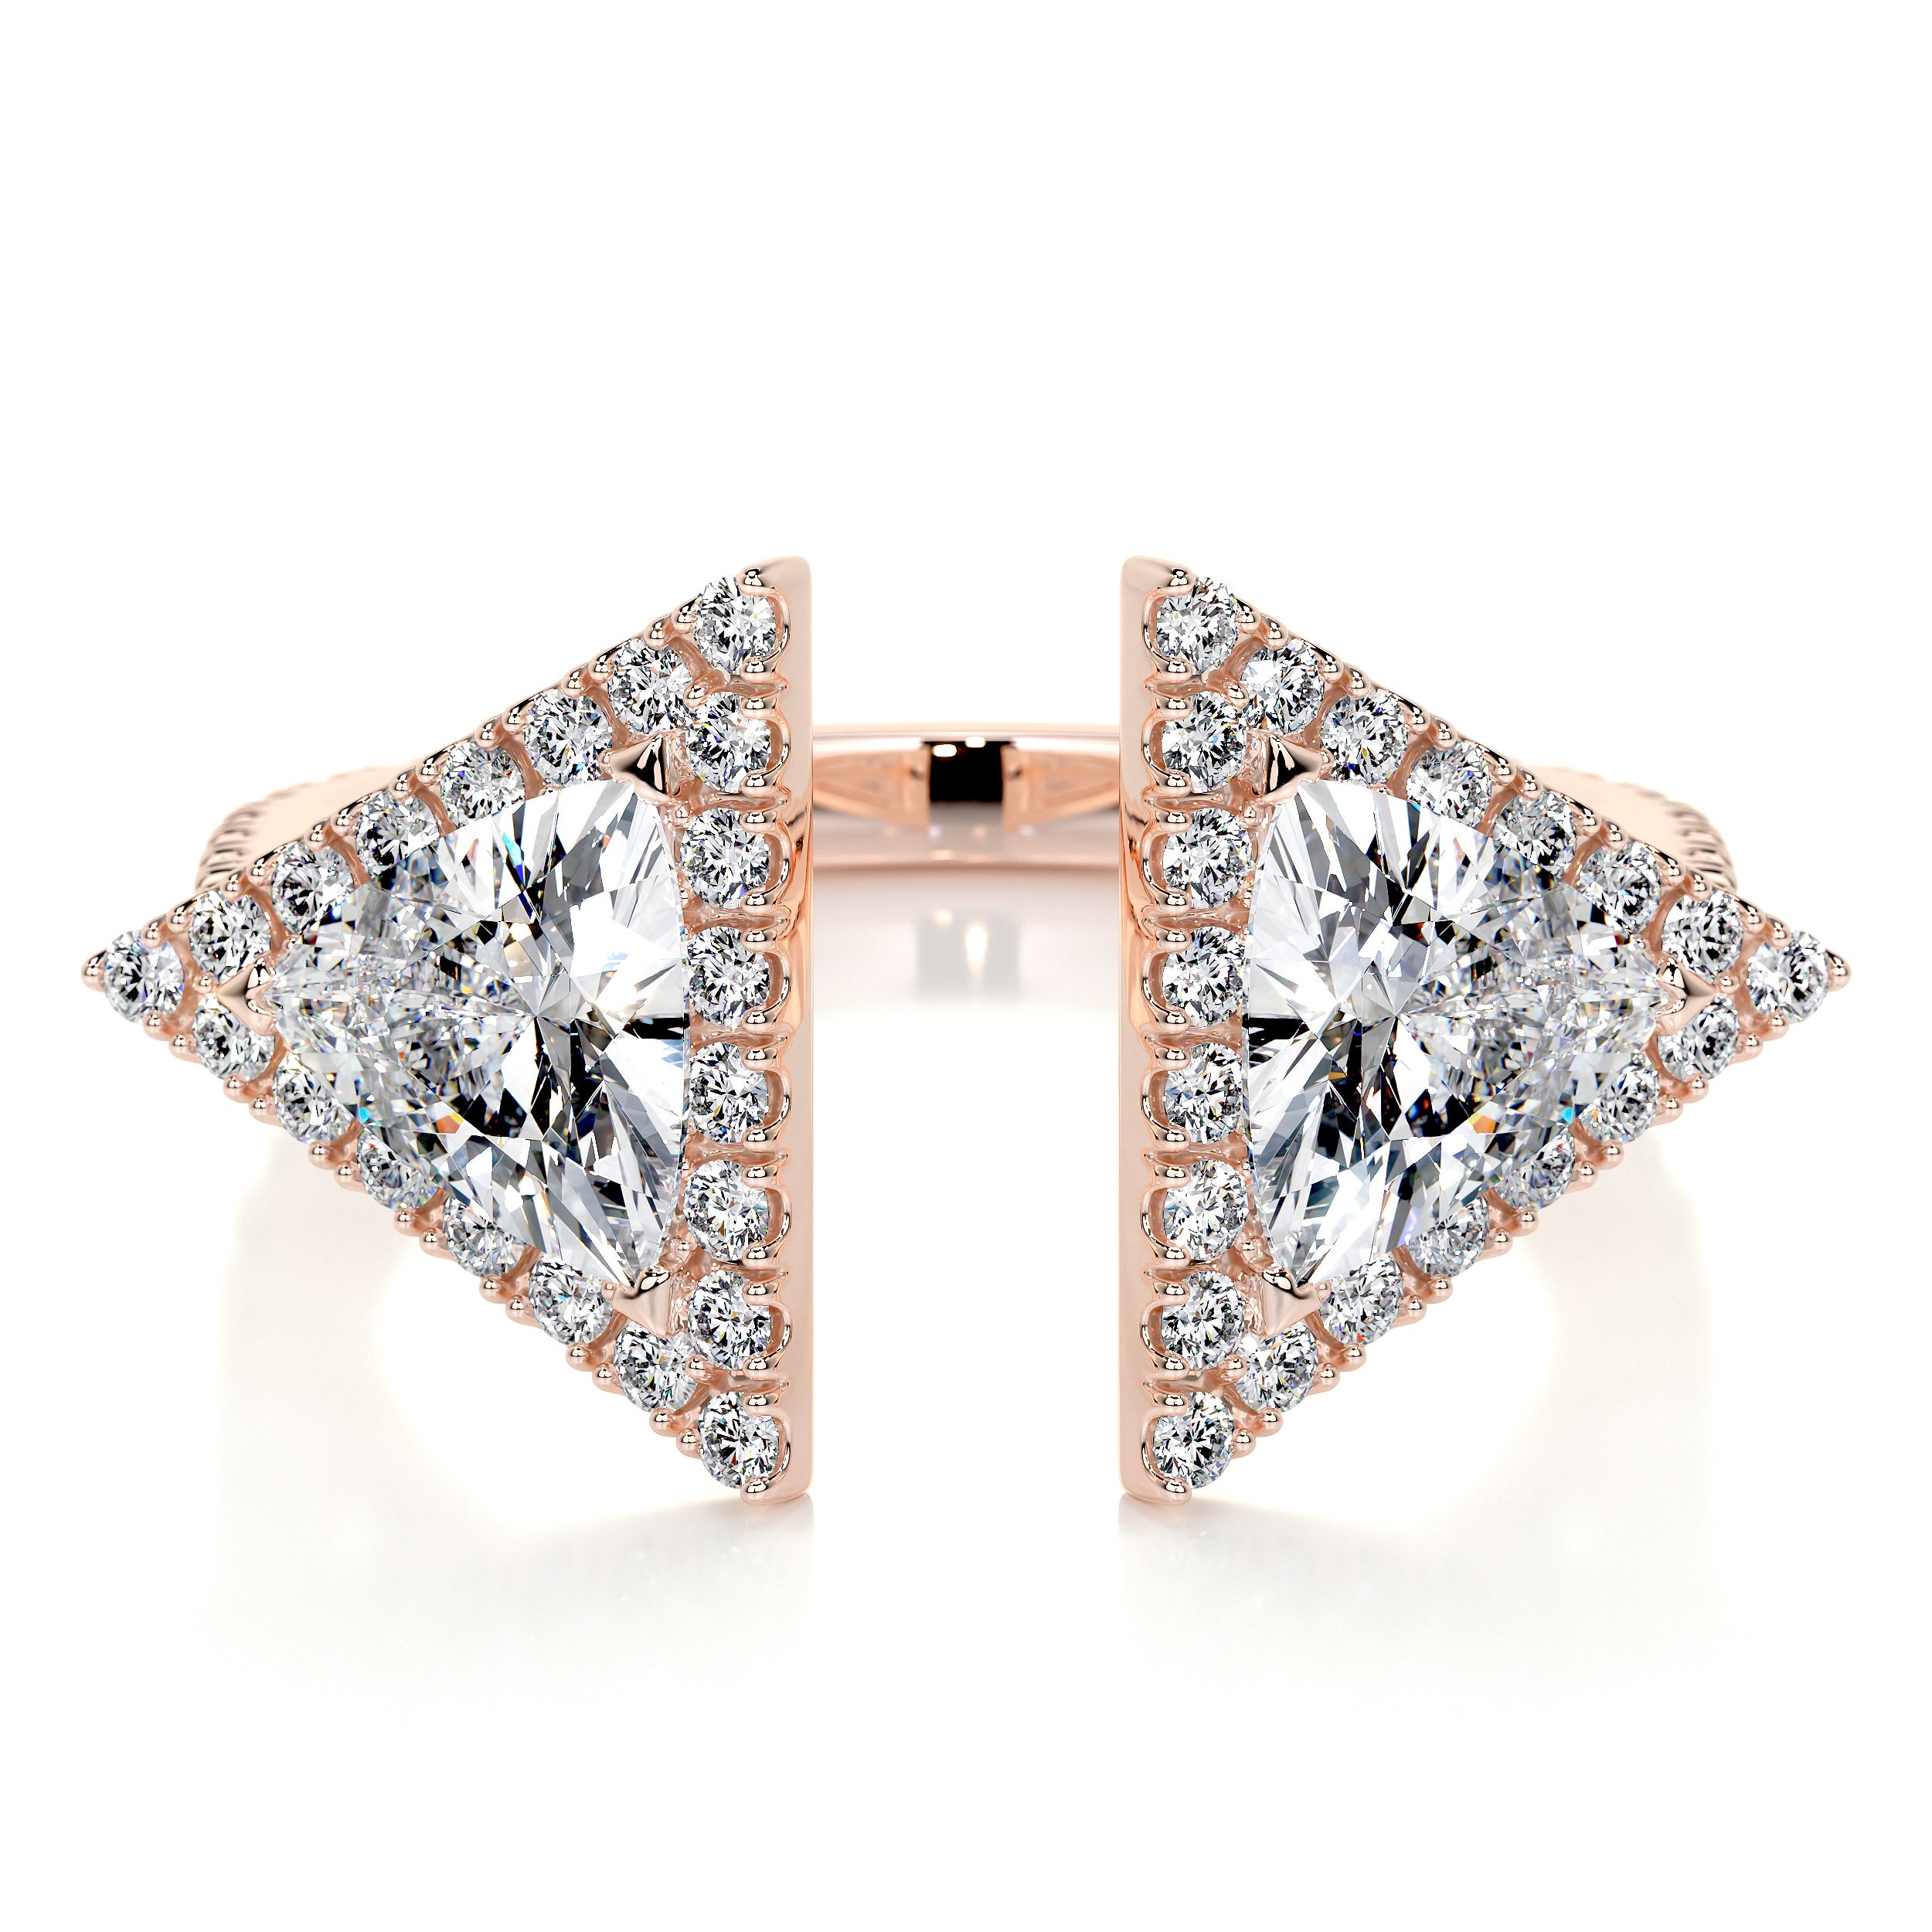 Men's Wedding Ring with Triangle Diamond | Jewelry by Johan - Jewelry by  Johan